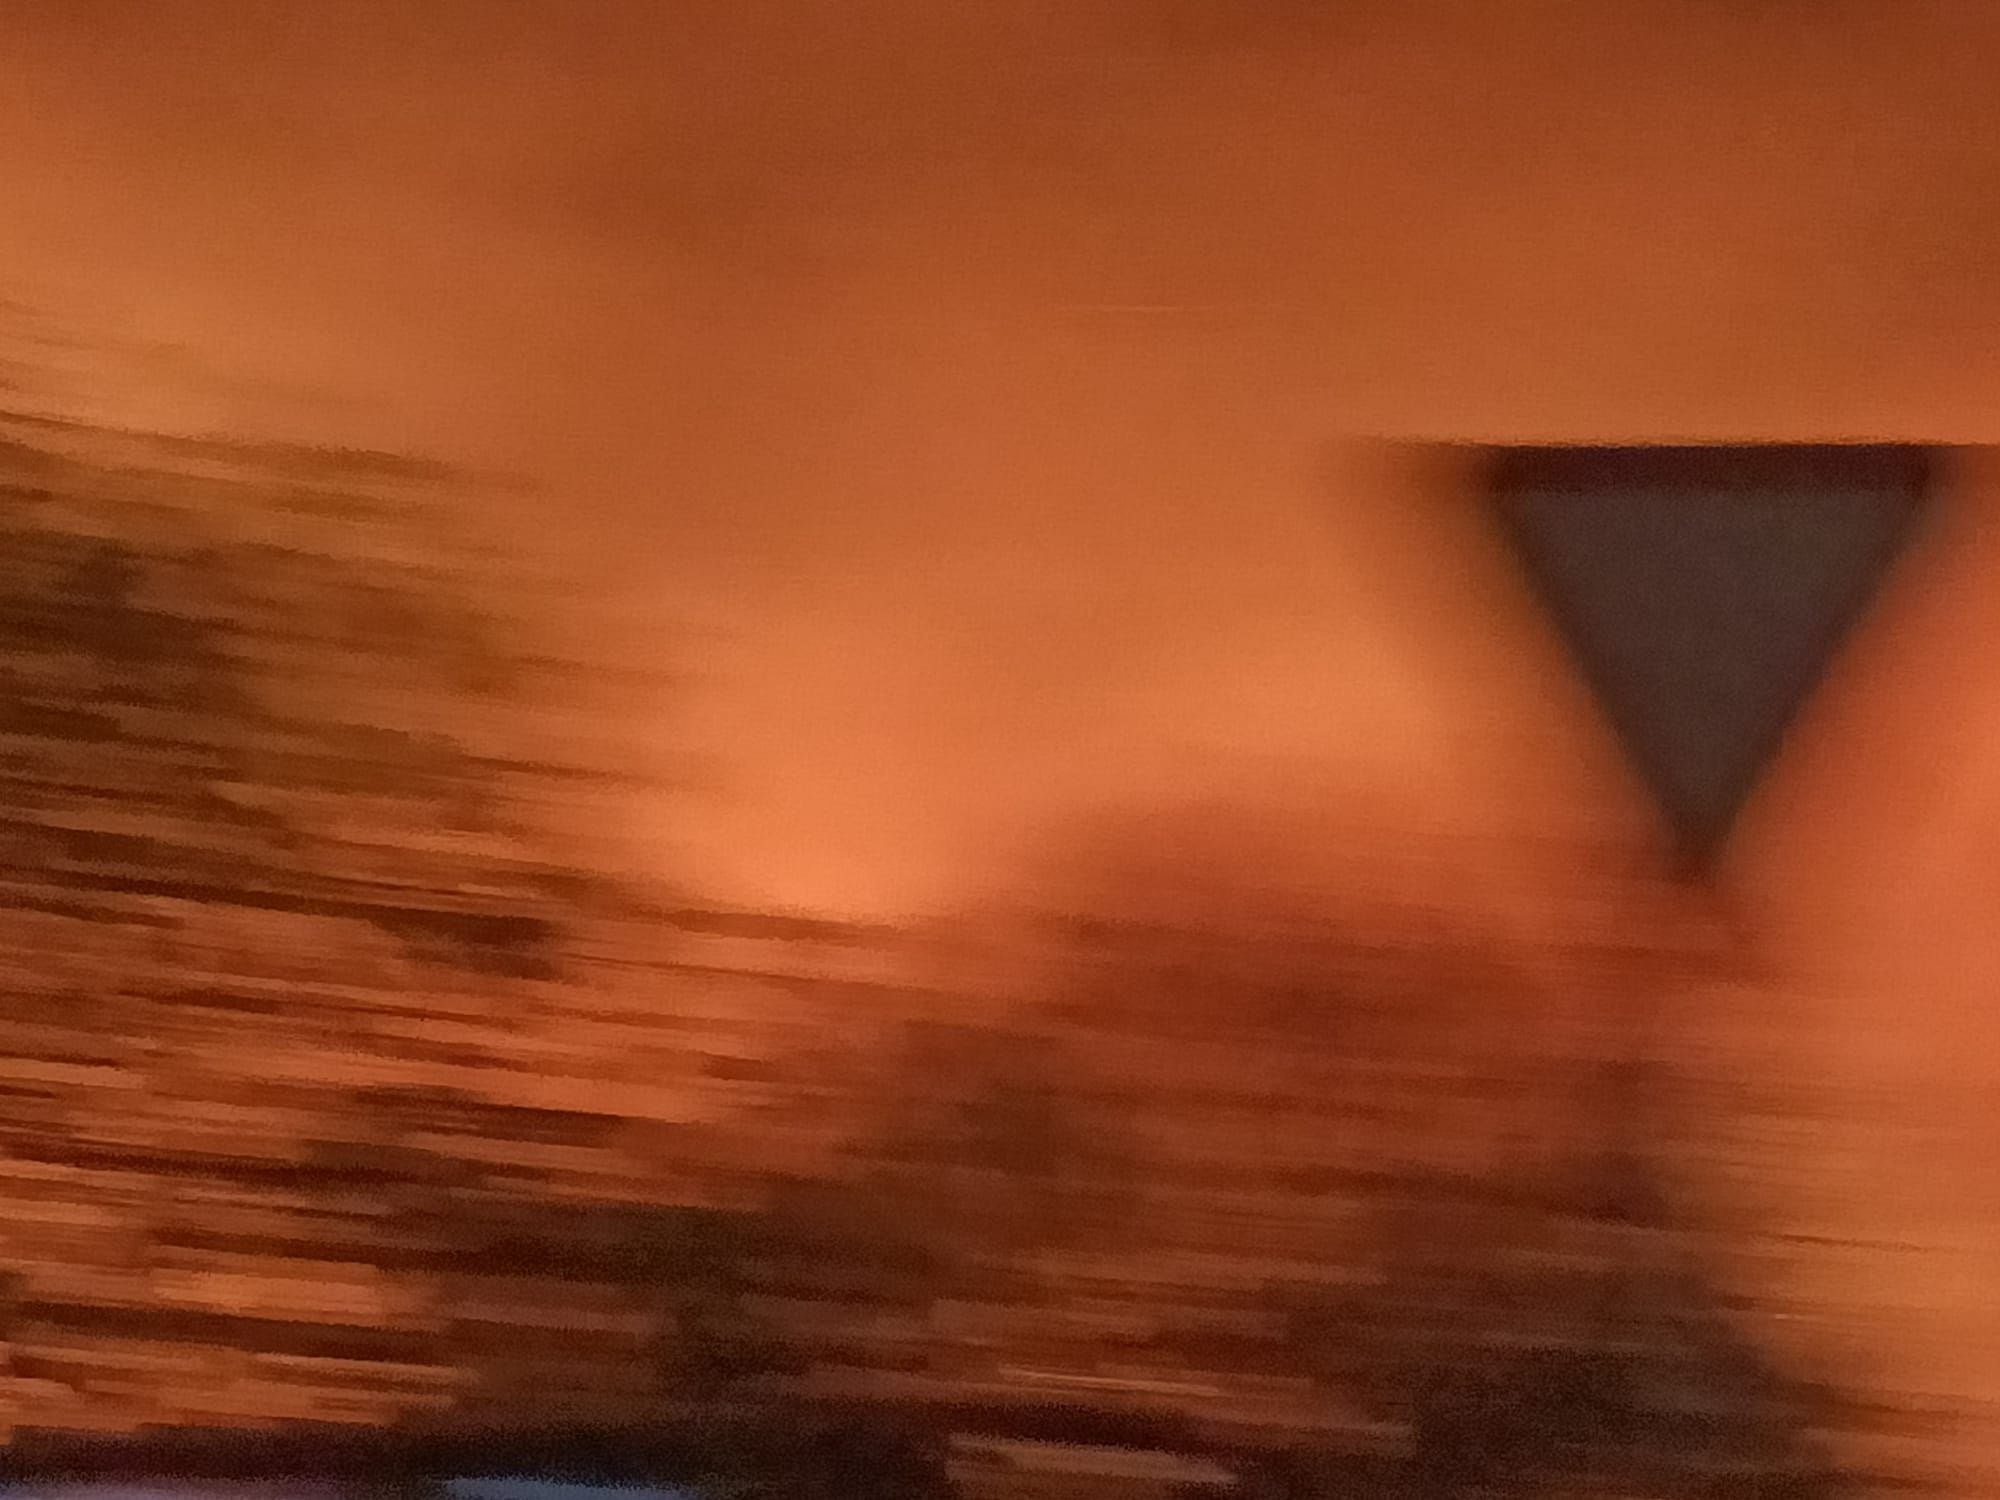 Imágenes del incendio de Teulada: un castillo de fuegos artificiales provoca un virulento fuego